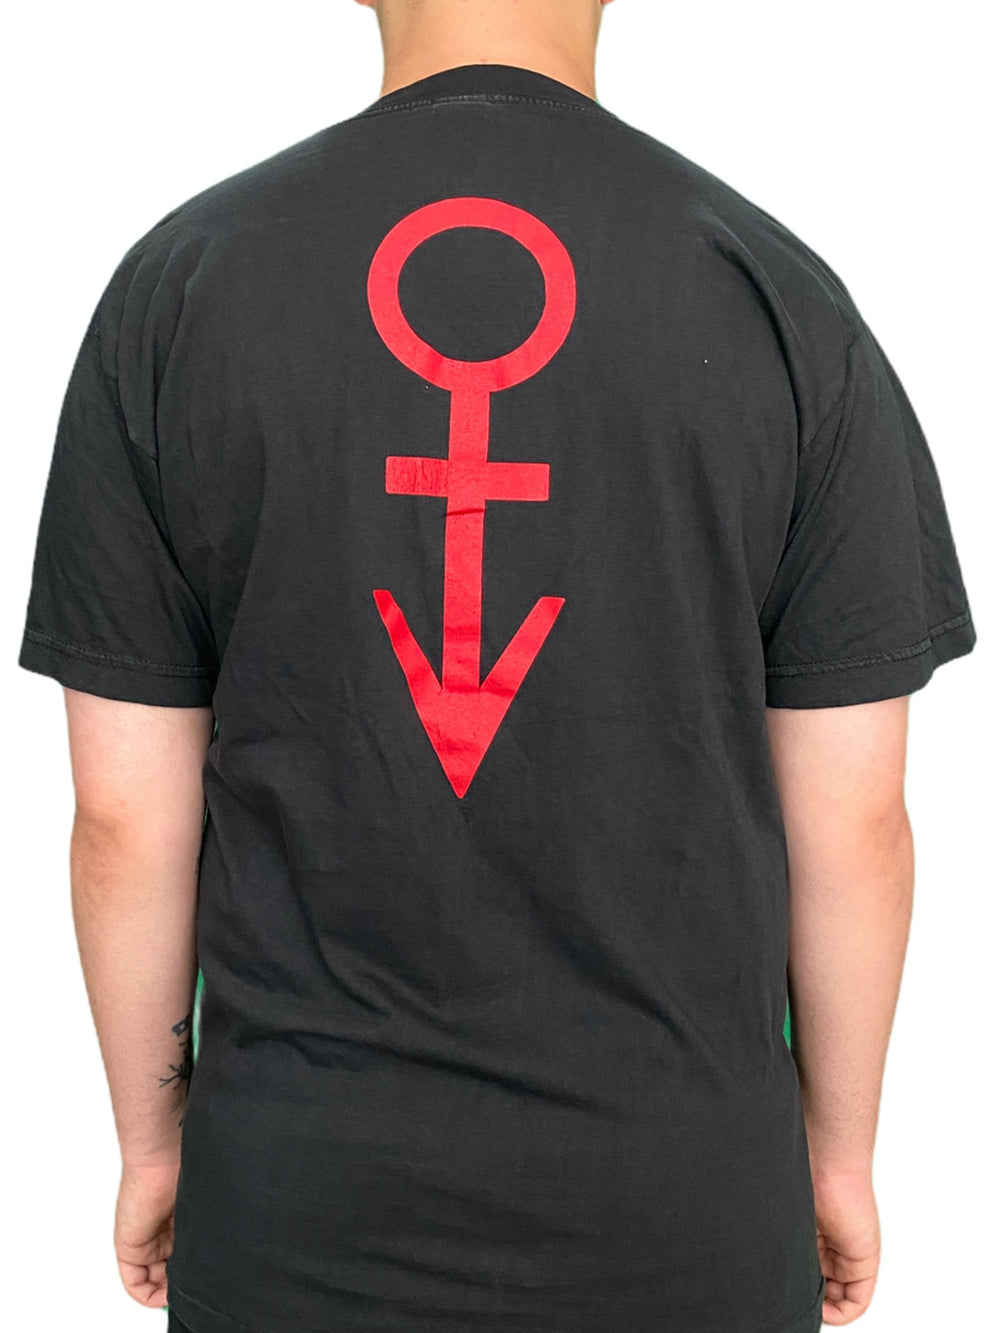 Prince – Official Vintage 1990 Nude Tour PRN Productions Unisex T Shirt Scandalous